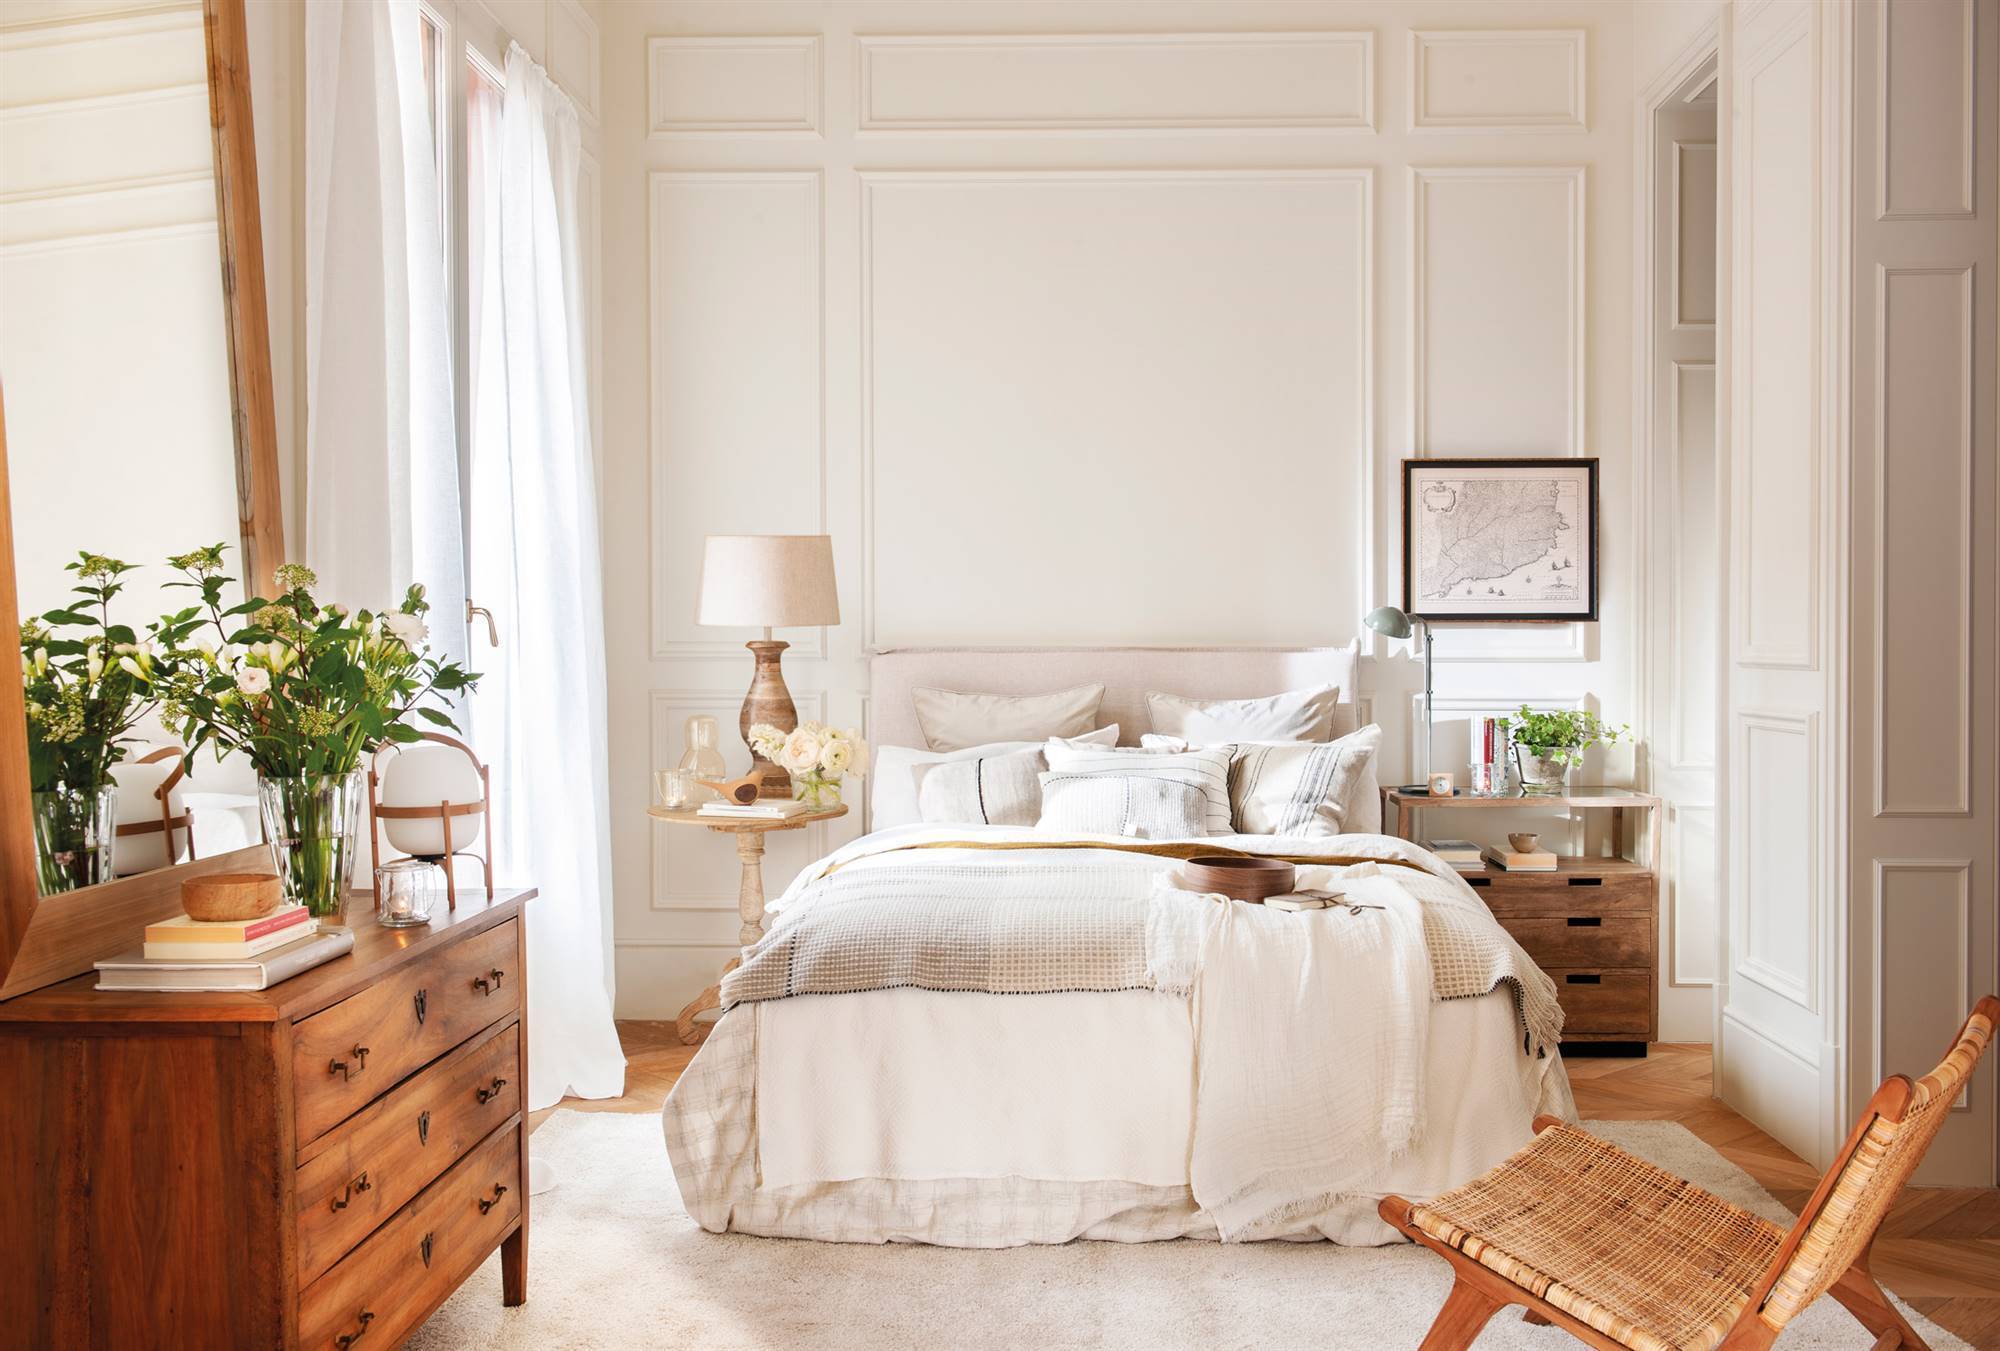 Dormitorio con molduras en las paredes y muebles de madera. 